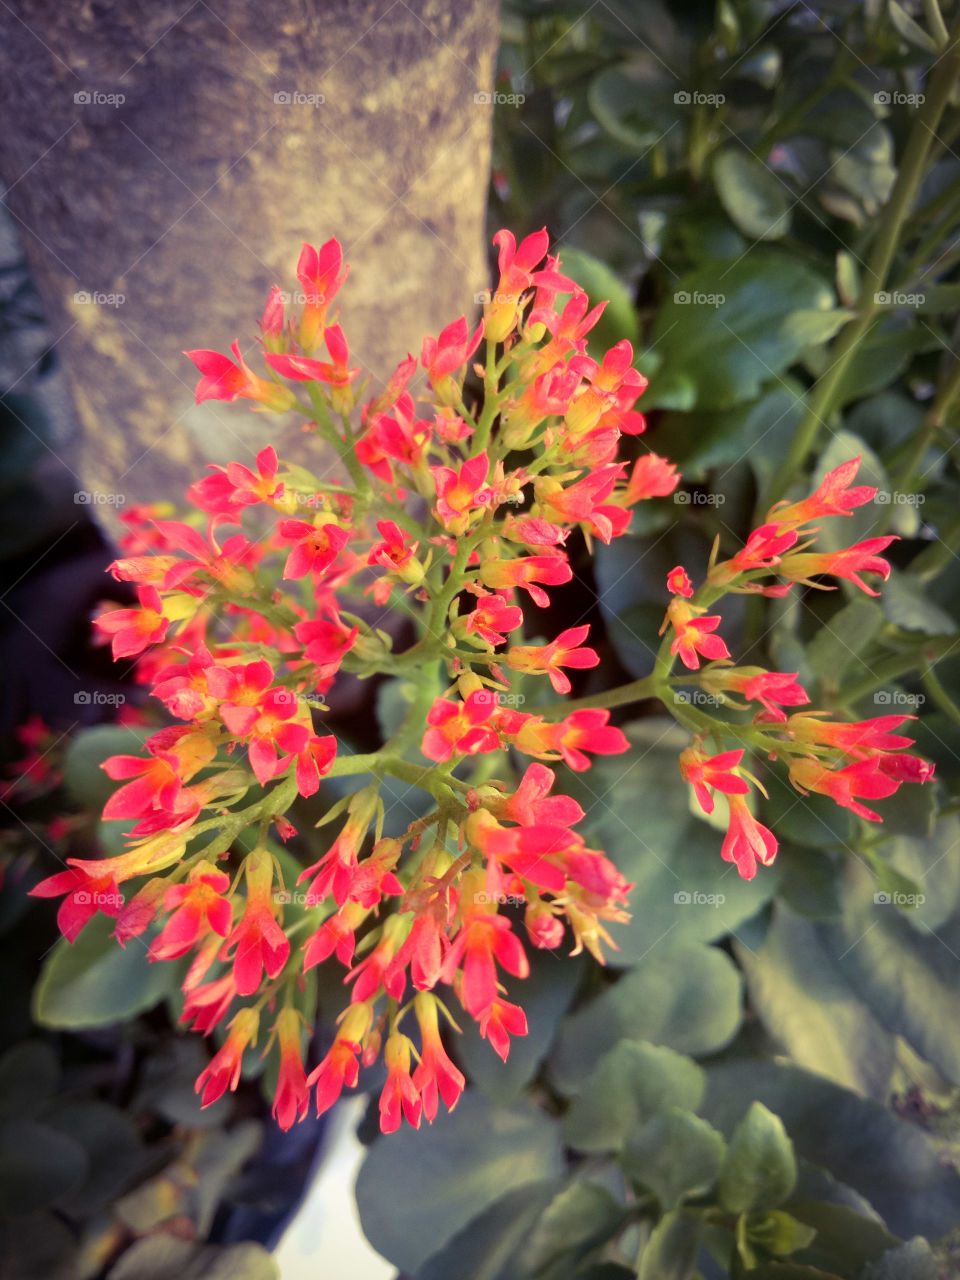 flower in my garden